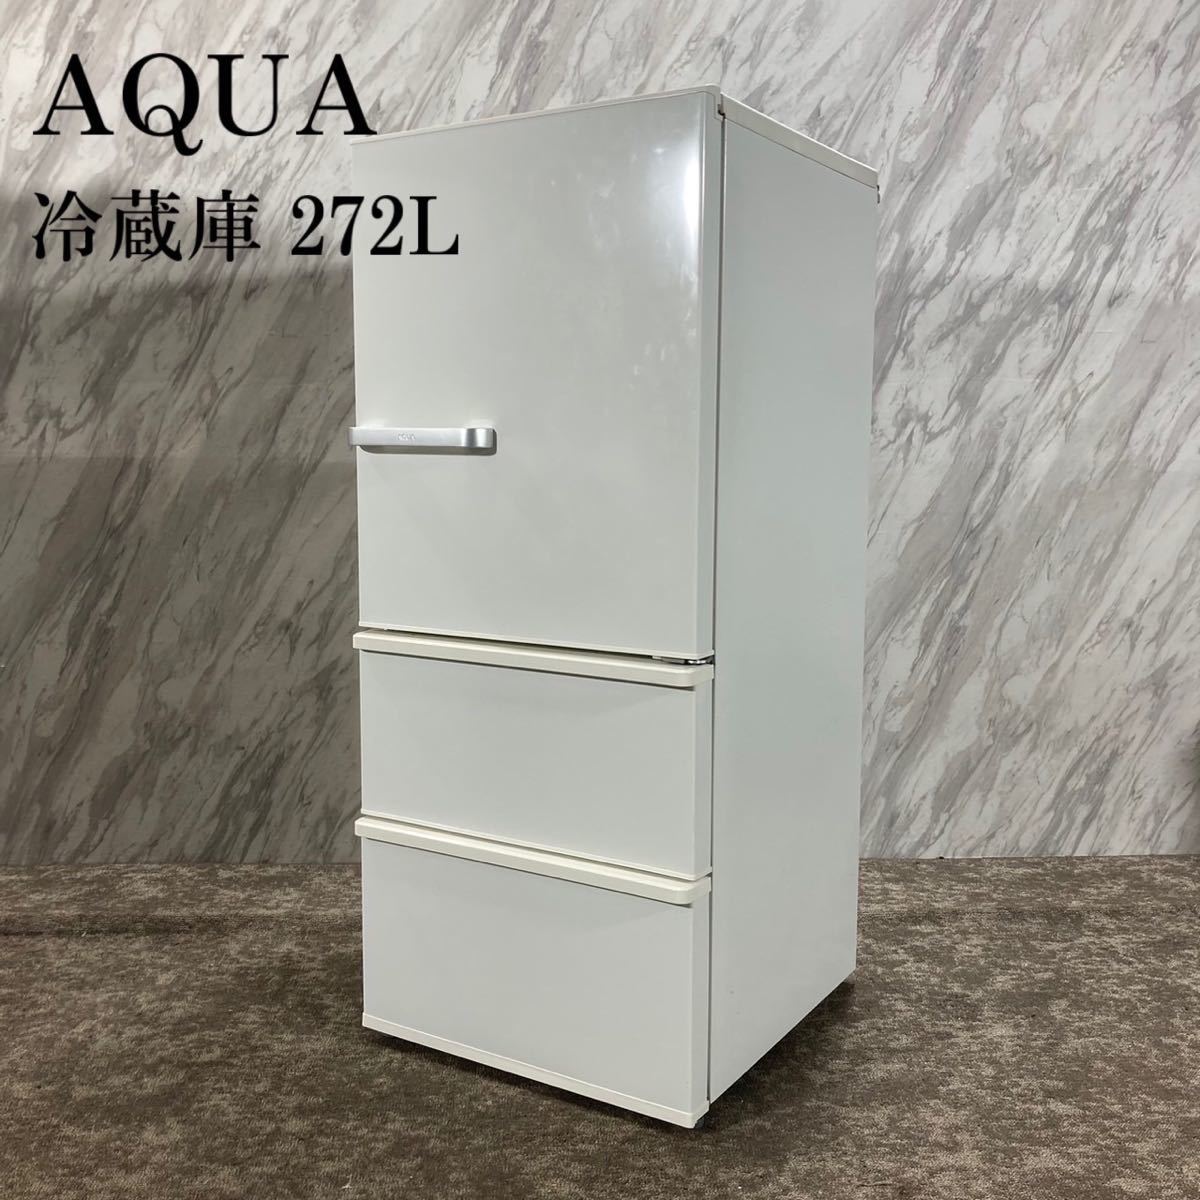 お見舞い 冷蔵庫 AQUA AQR-27G(W) K725 家電 2018年製 272L 200